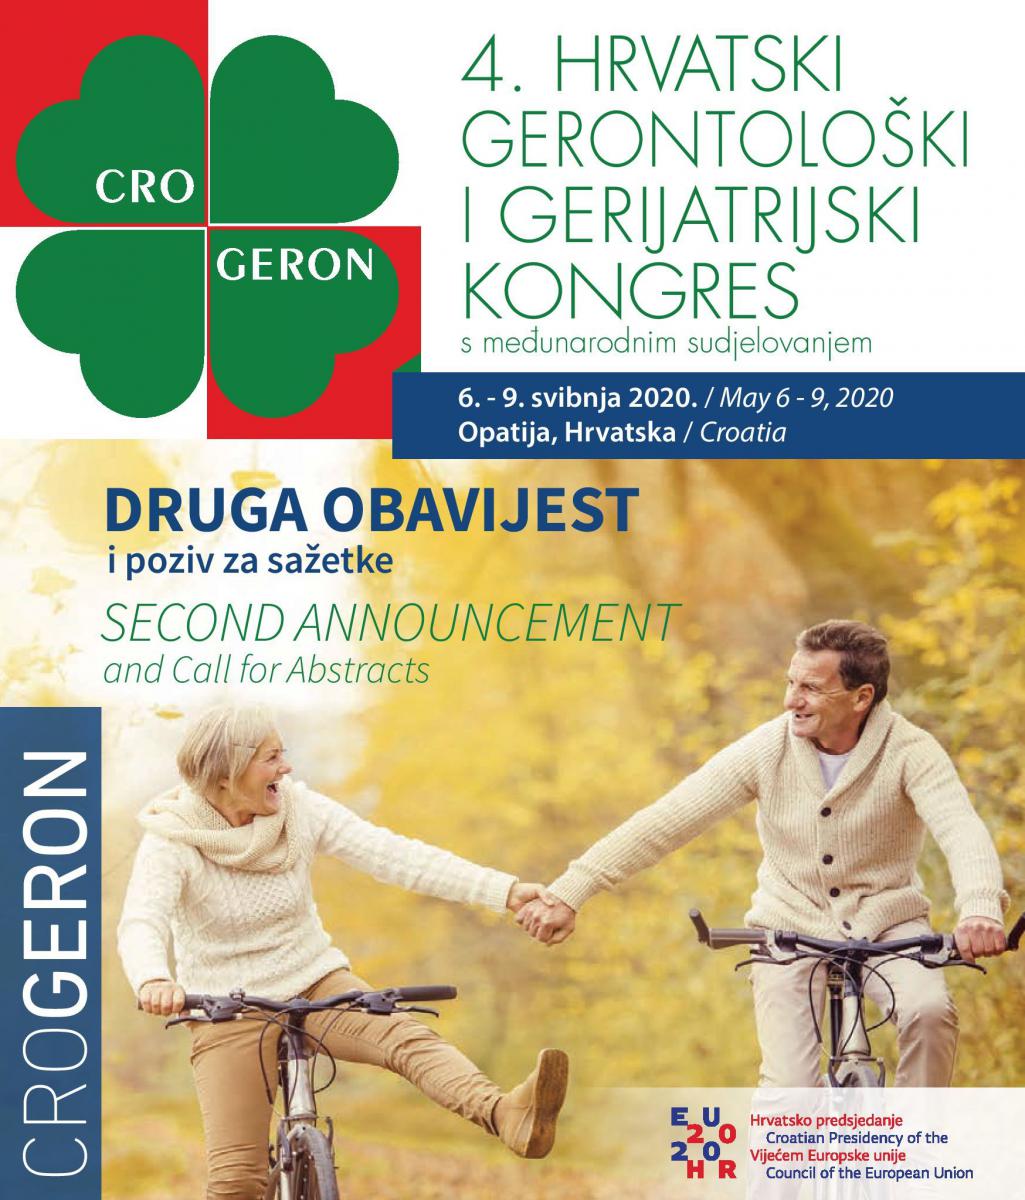 4. hrvatski gerontološki i gerijatrijski kongres - druga obavijest